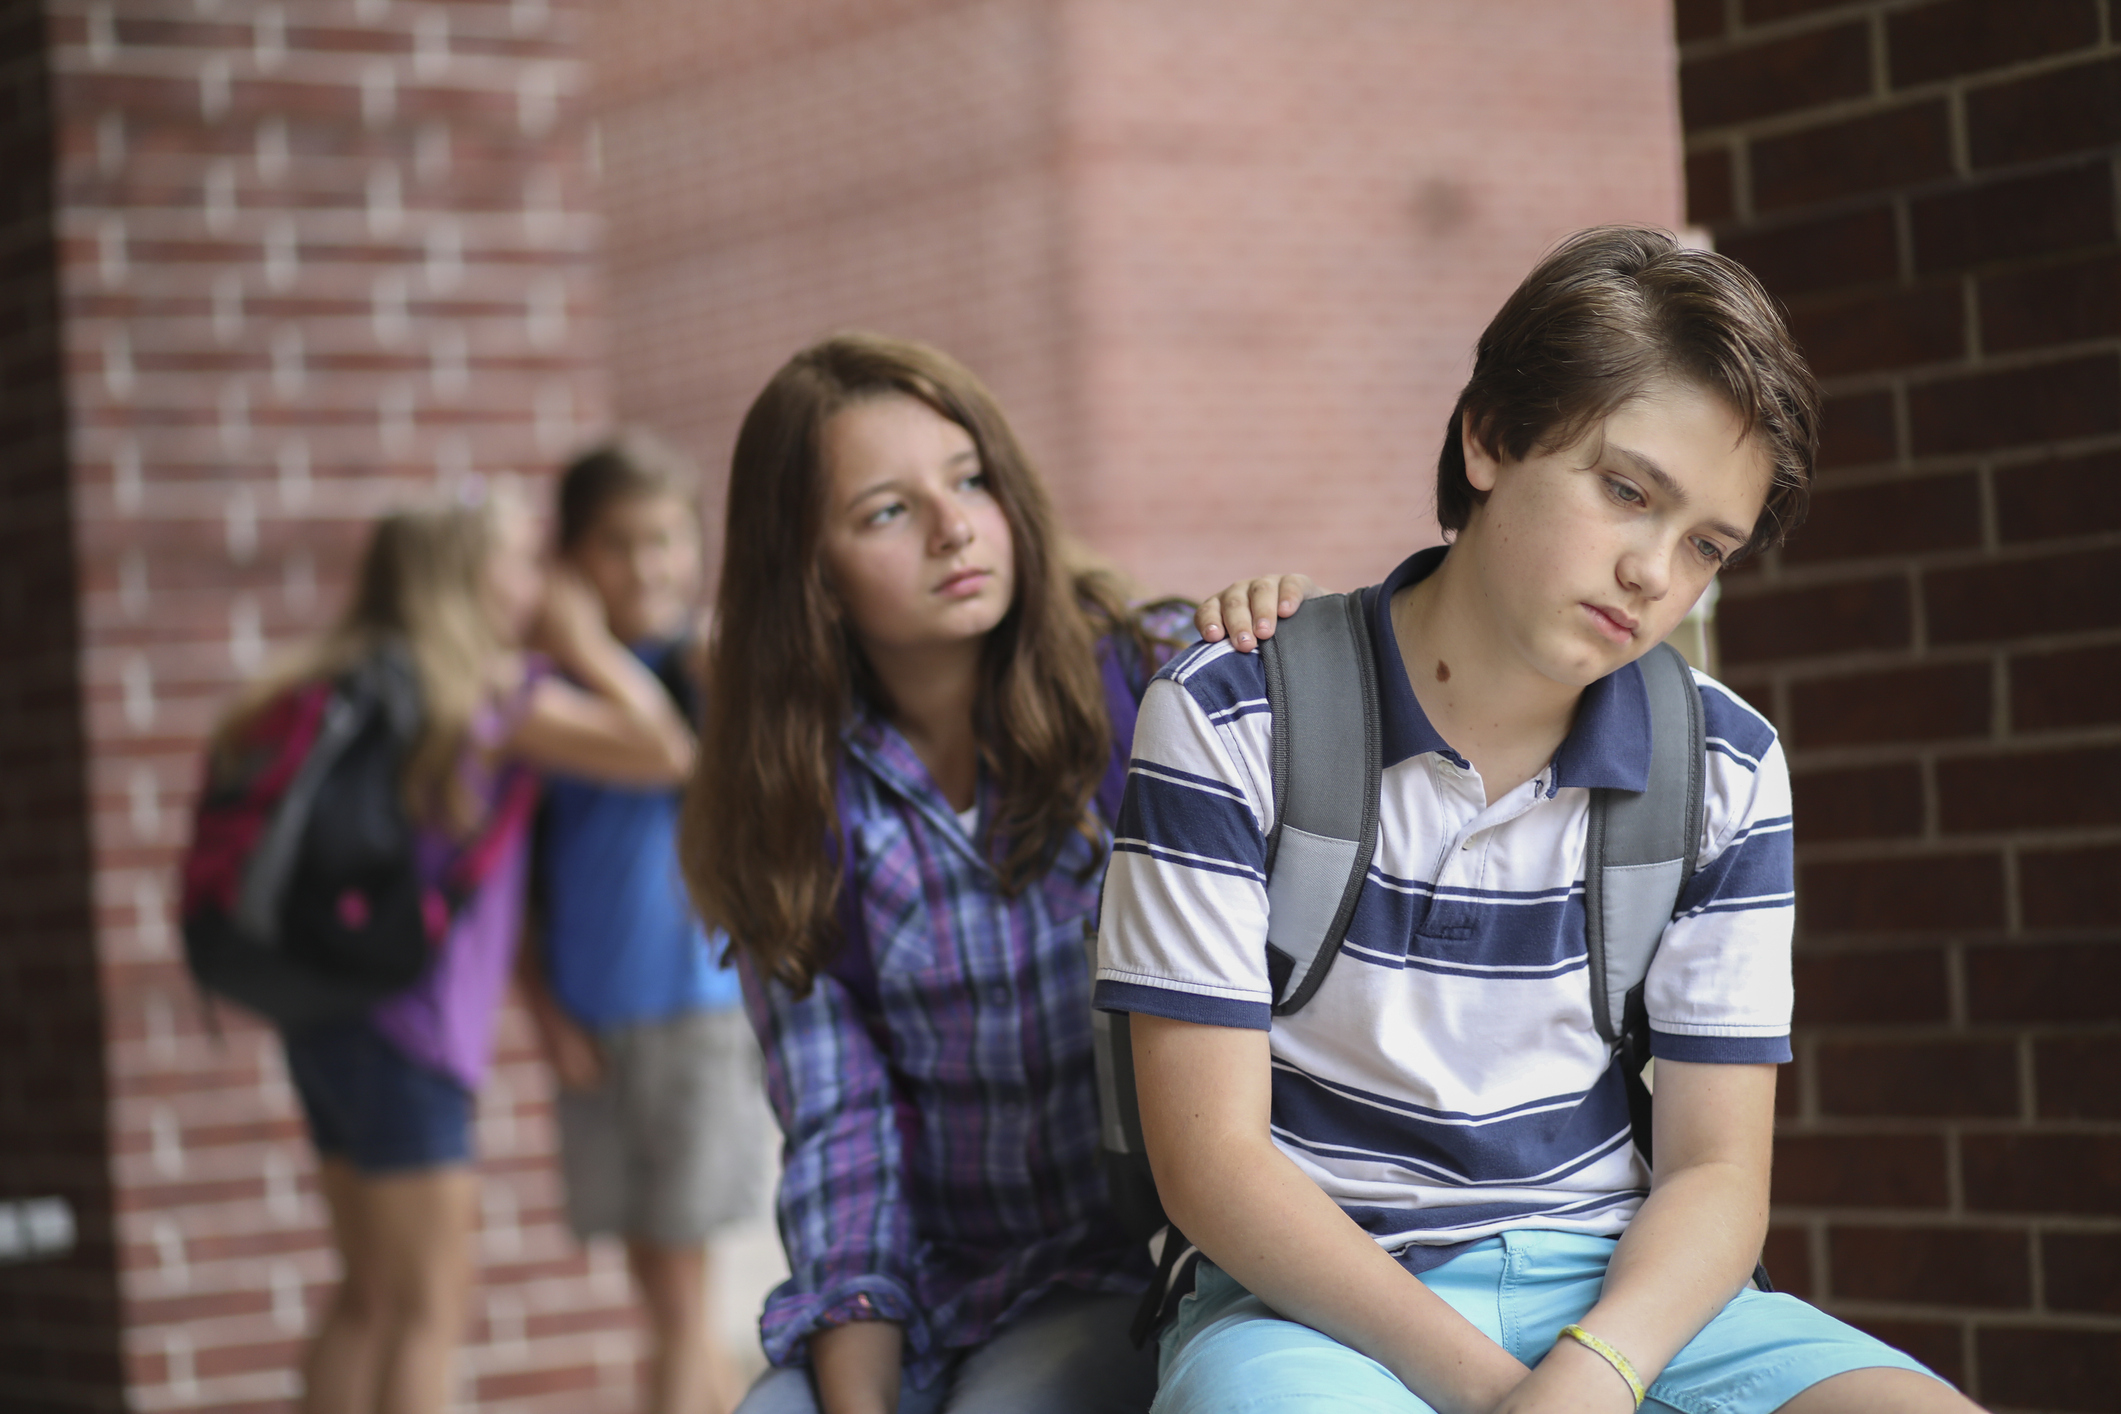 Jeune adolescent triste ou déprimé, réconforté par une amie, avec deux jeunes discutant en arrière-plan.